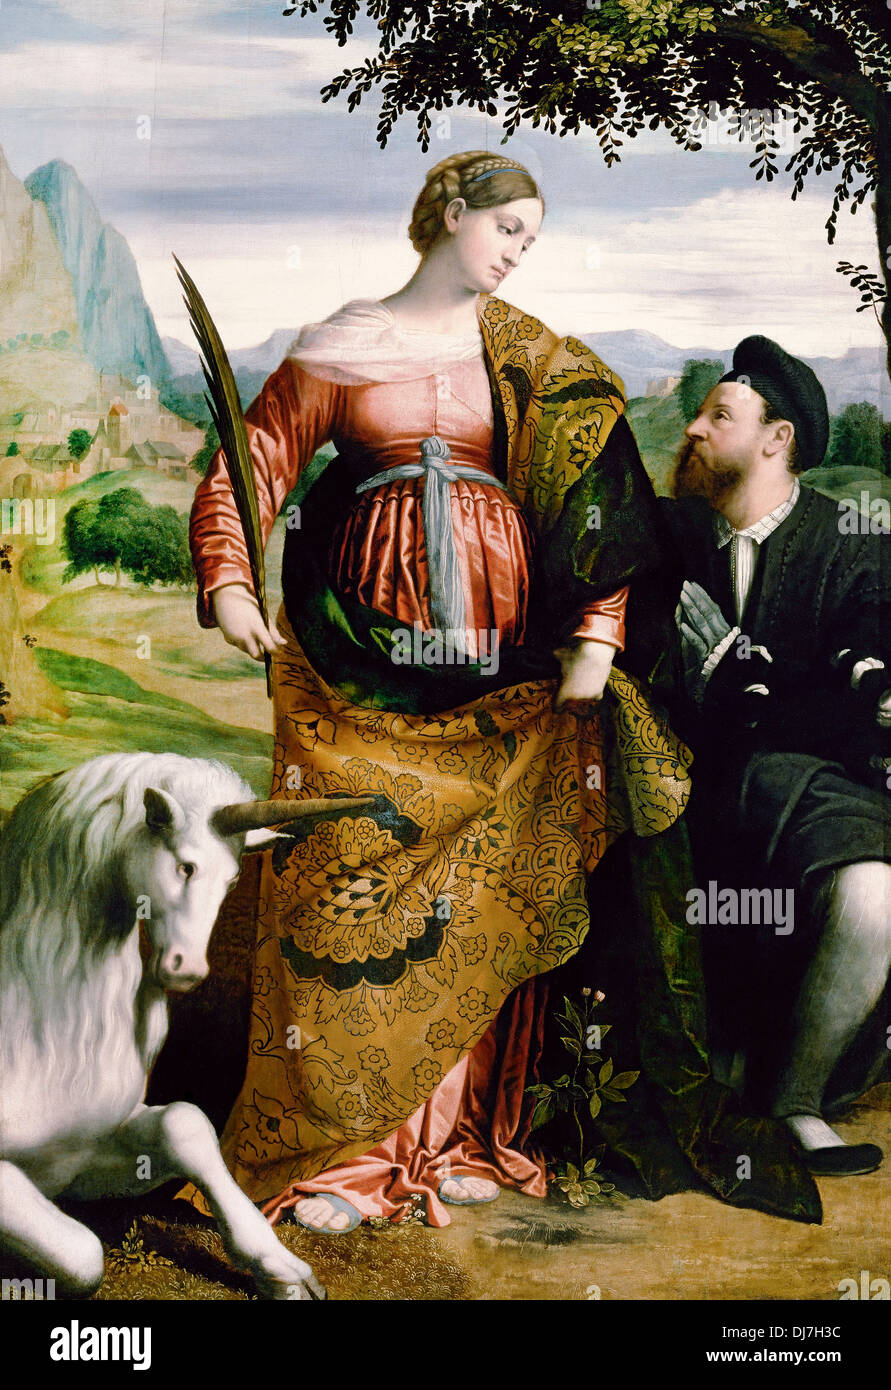 Moretto da Brescia, Justina, vénéré par un mécène. Circa 1530-1534. Huile sur toile. Le Kunsthistorisches Museum, Vienne Autriche Banque D'Images